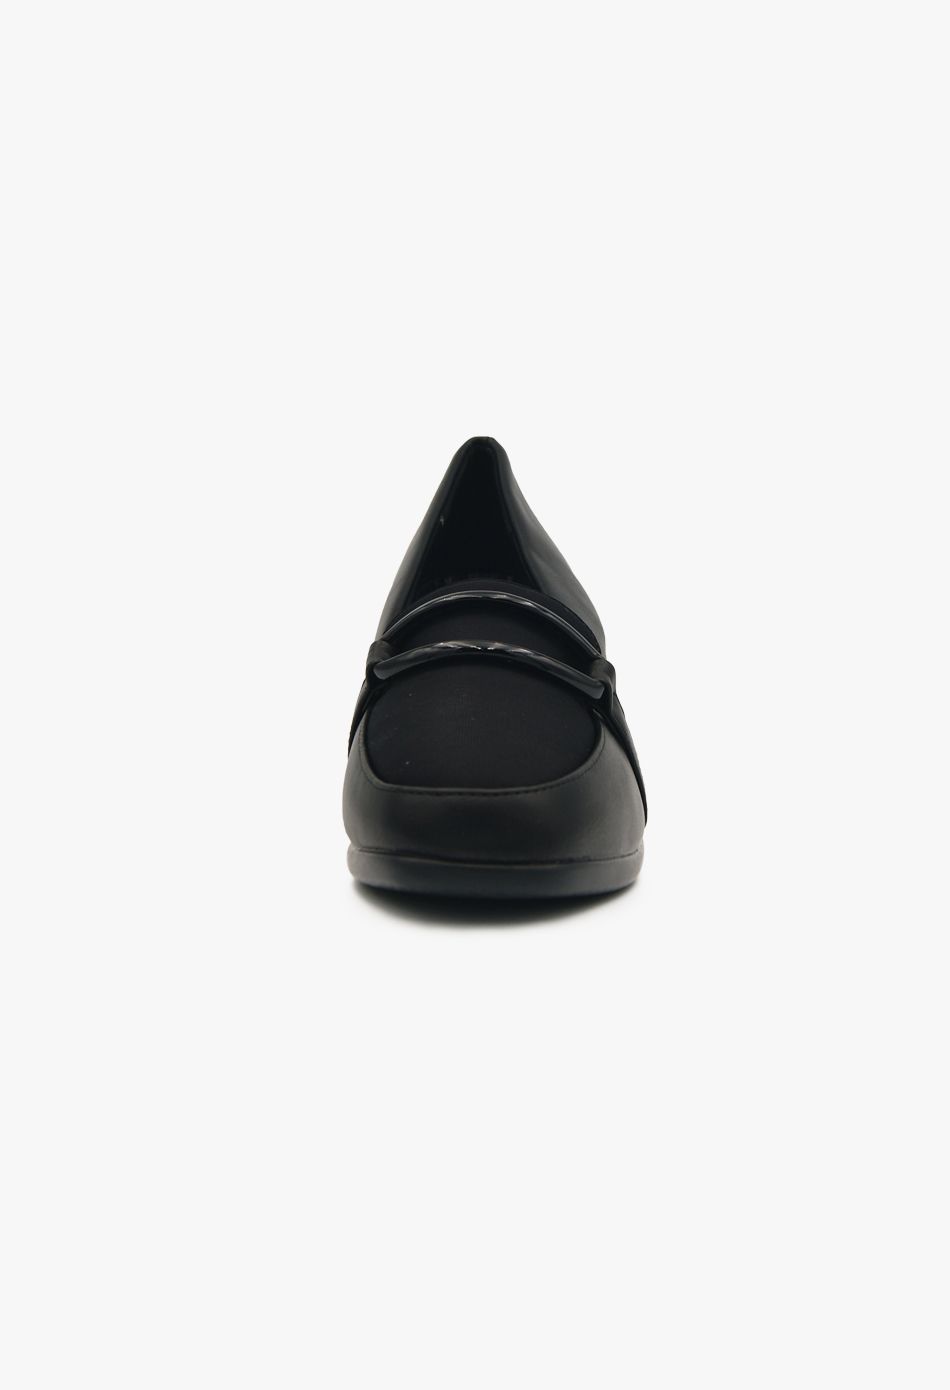 Γυναικεία μοκασίνια με χοντρό τακούνι Μαύρο / W523047-black Γόβες Με Χοντρό Τακούνι joya.gr